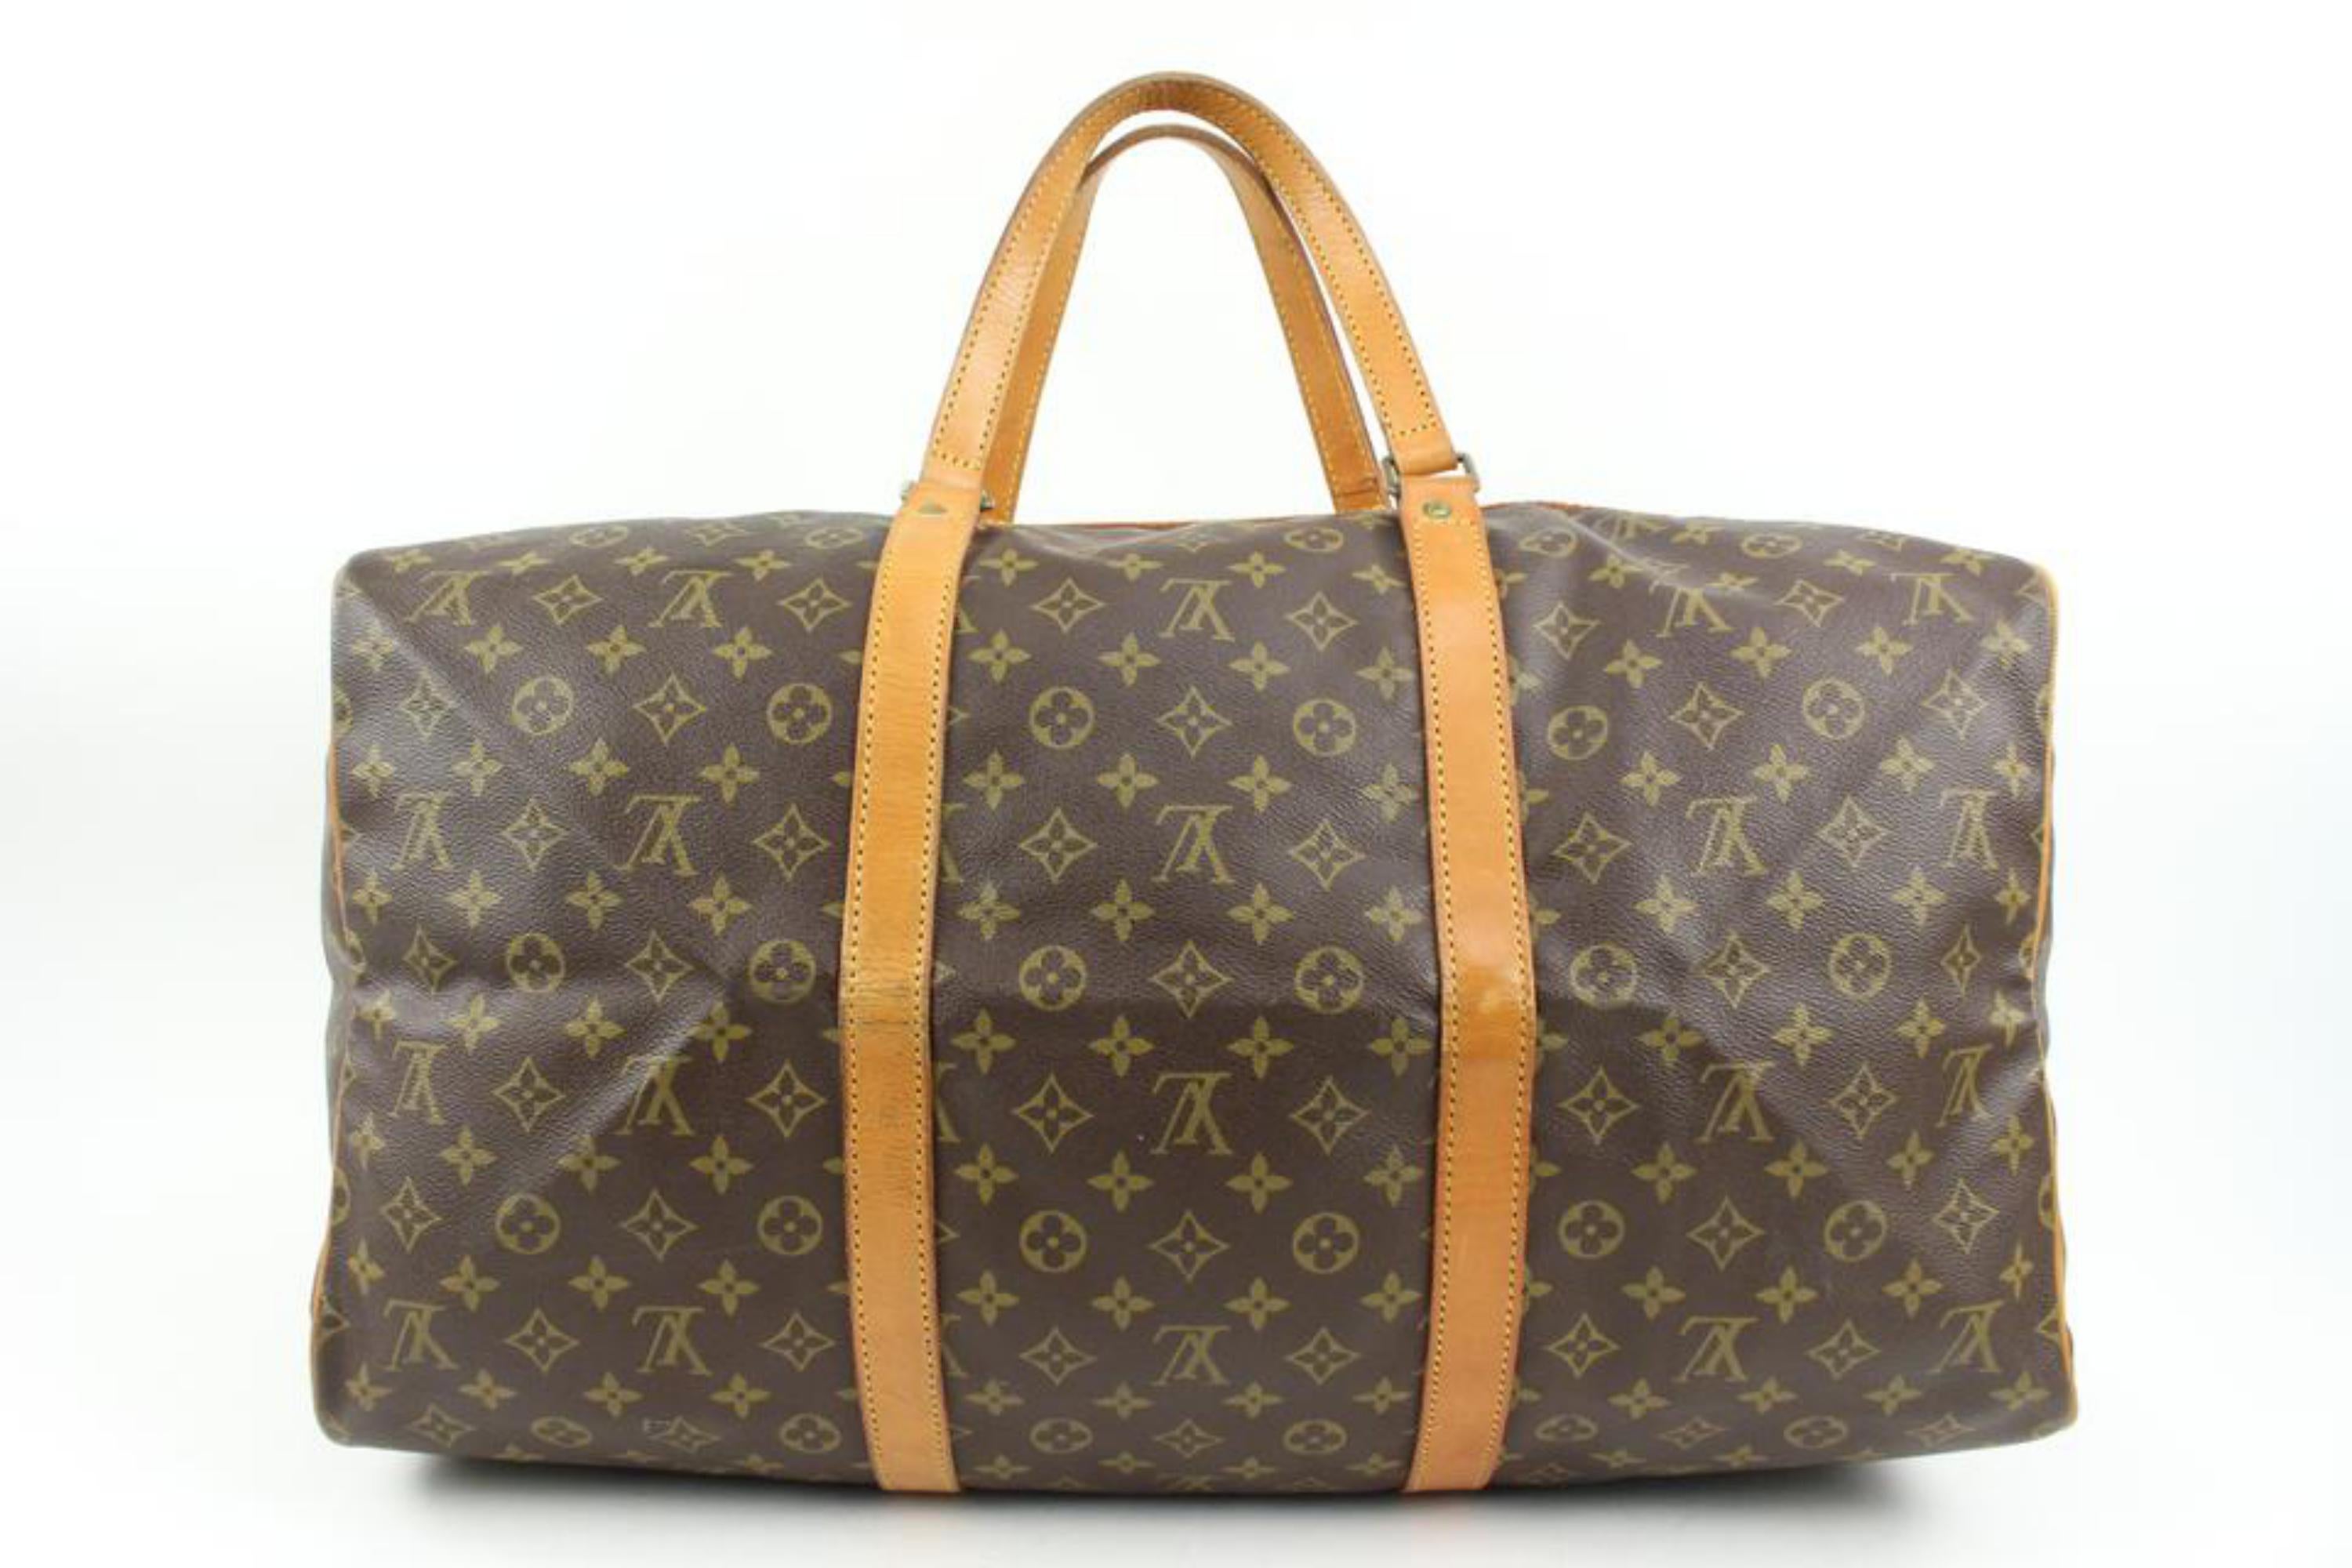 Louis Vuitton Discontinued Monogram Sac Souple 55 Duffle Bag 24lk31s For Sale 2